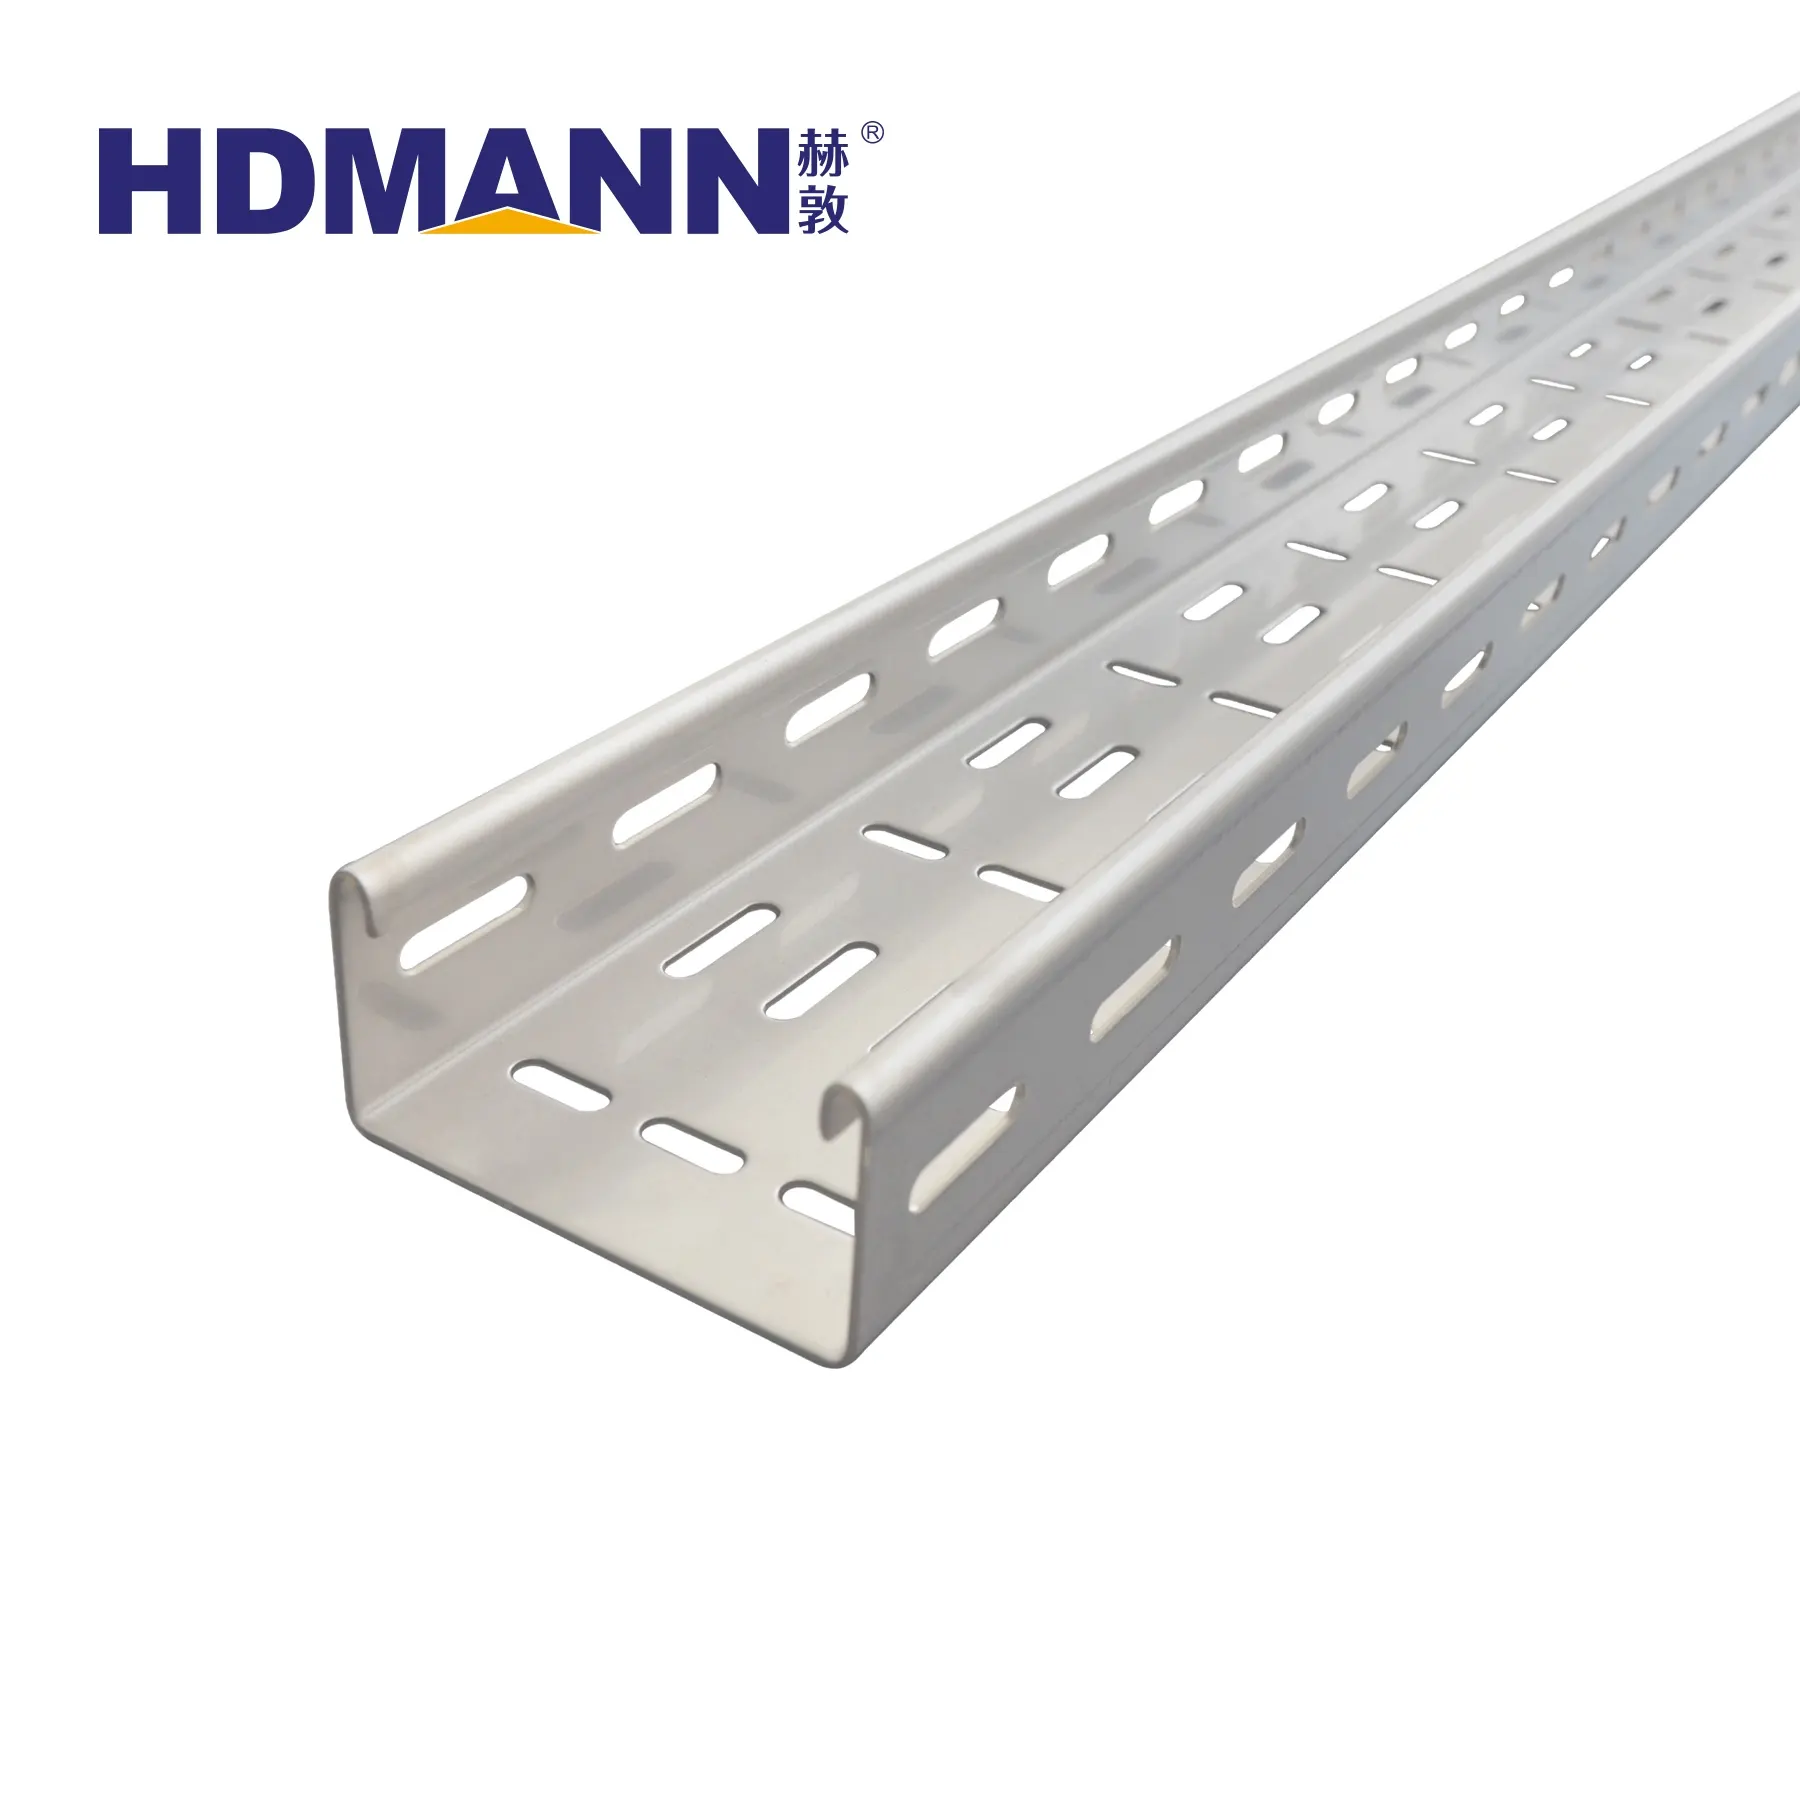 HDMANN Factory bietet direkt Edelstahl-Kabel rinne an